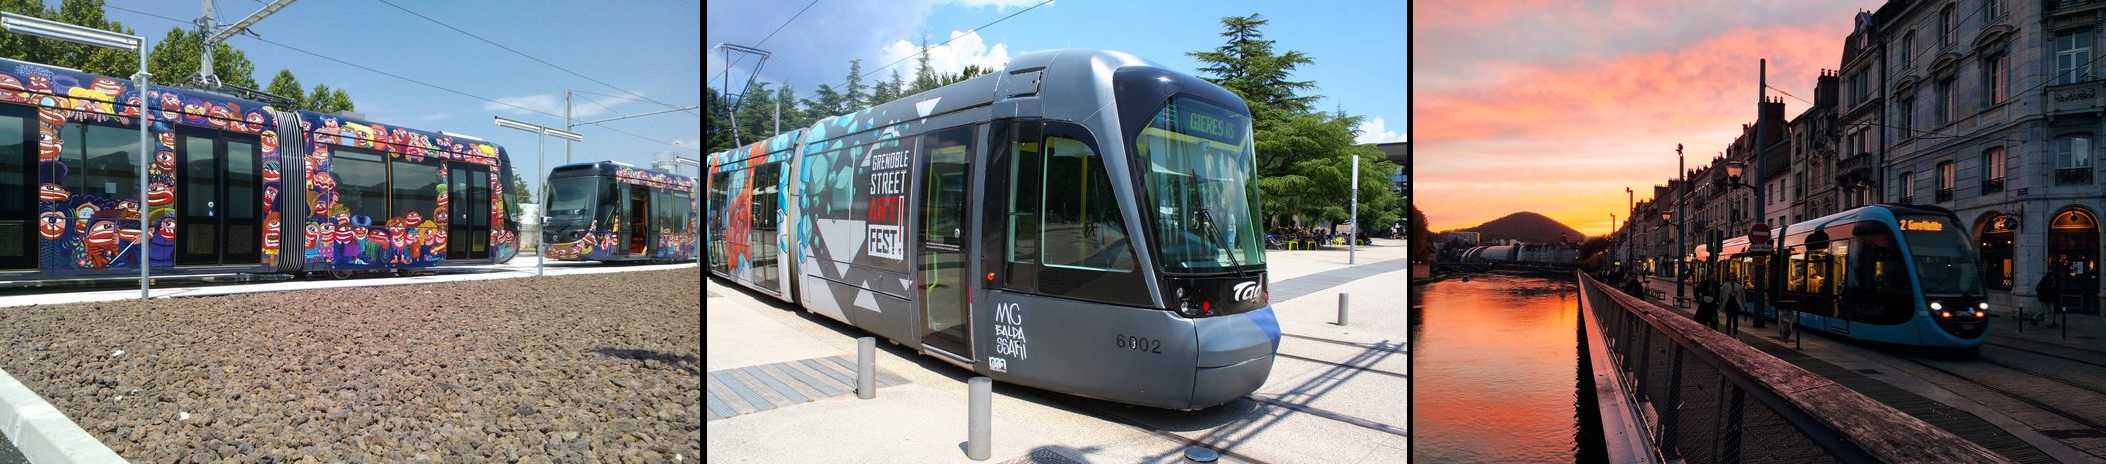 Tramways fer classique Aubagne, Grenoble, Besançon